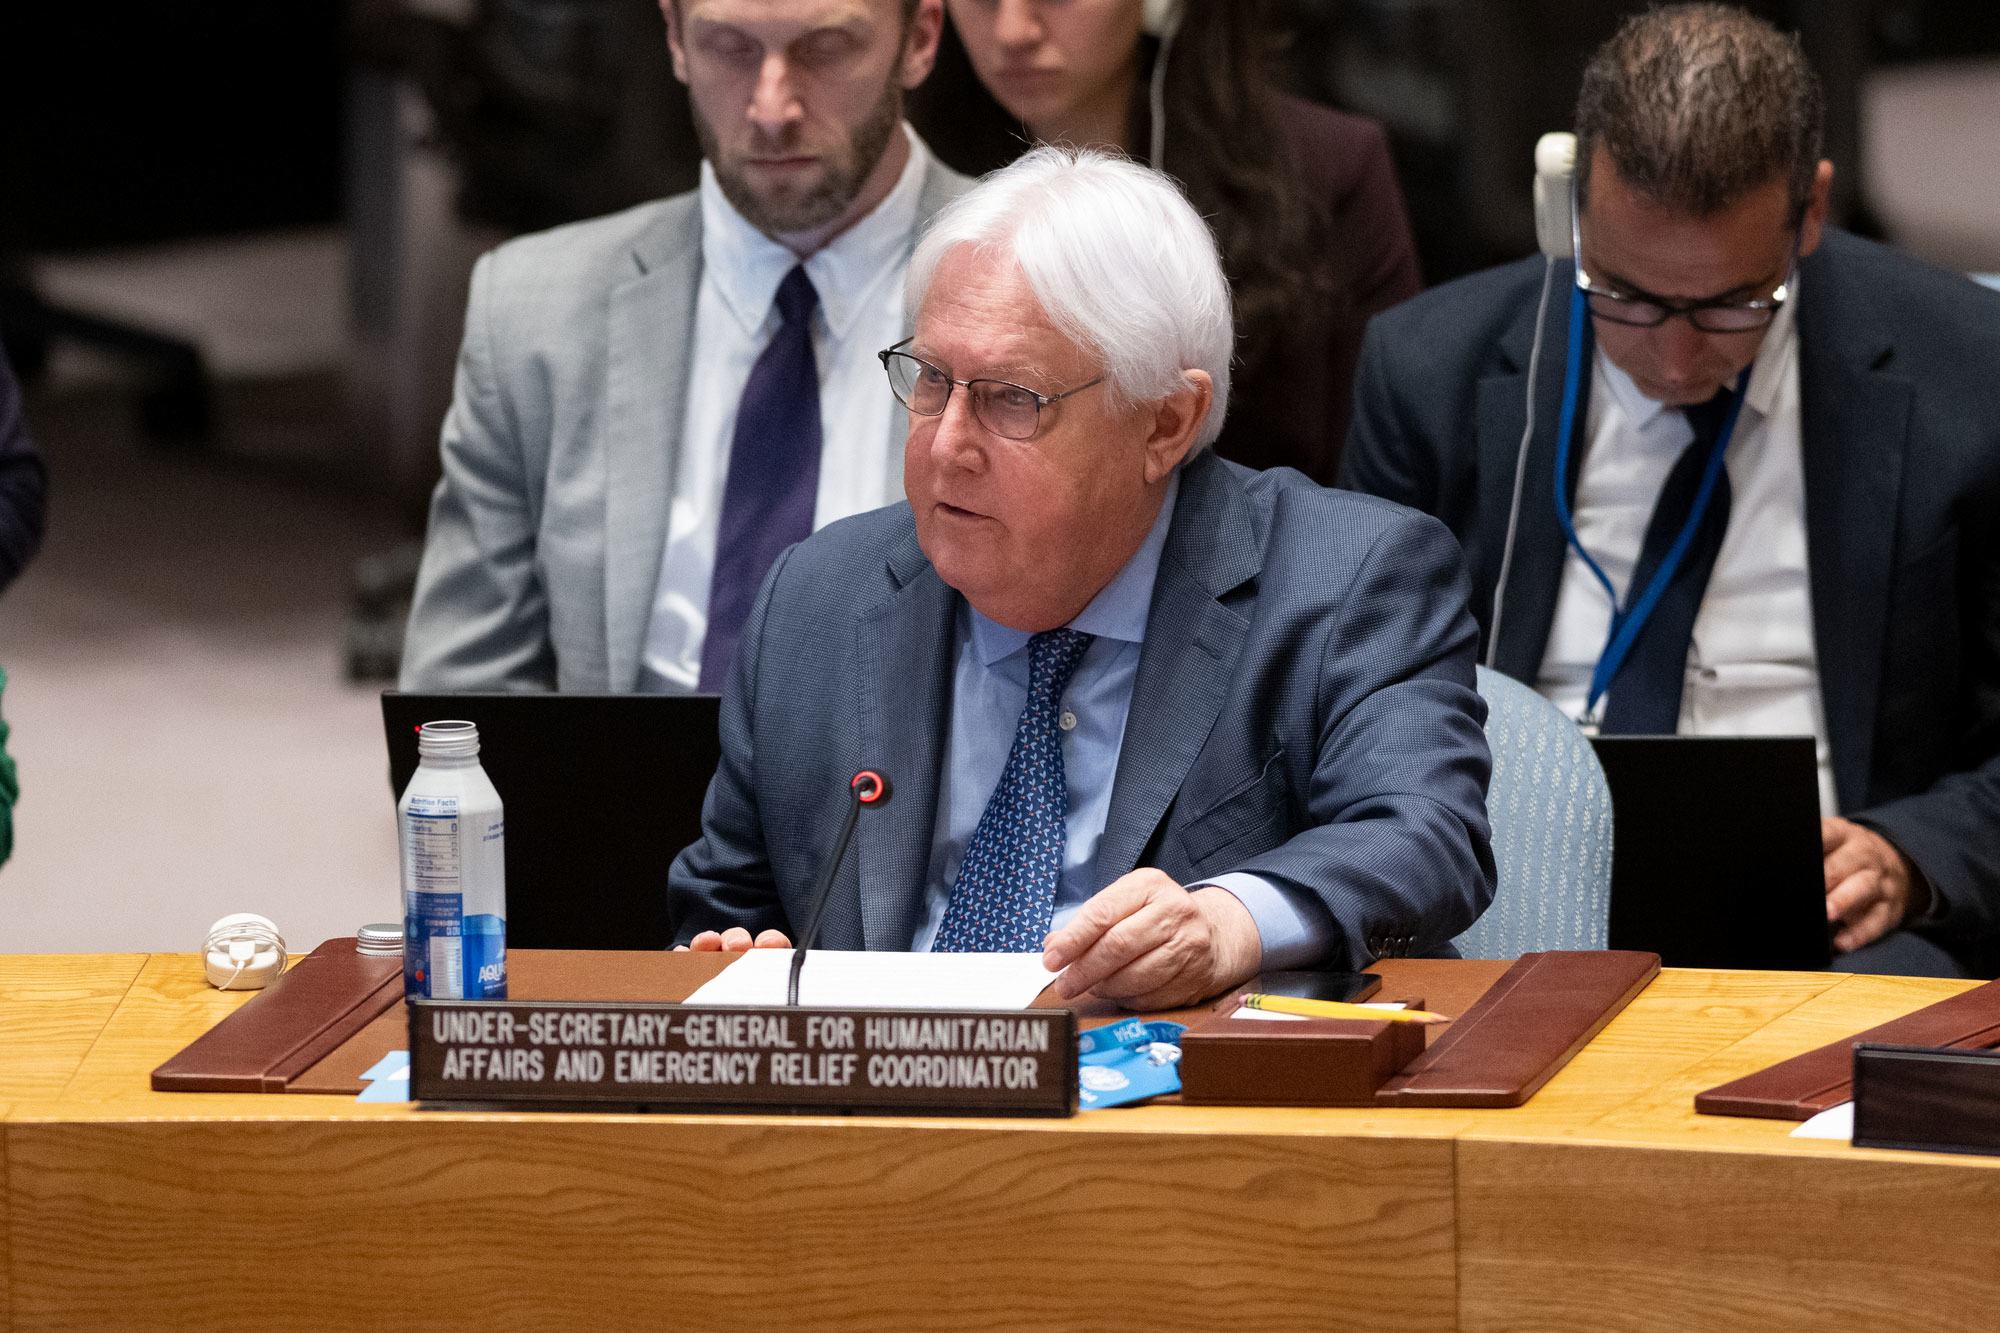 مارتن غريفيثس، وكيل الأمين العام للشؤون الإنسانية ومنسق الإغاثة في حالات الطوارئ، يطلع مجلس الأمن على الوضع في سوريا.